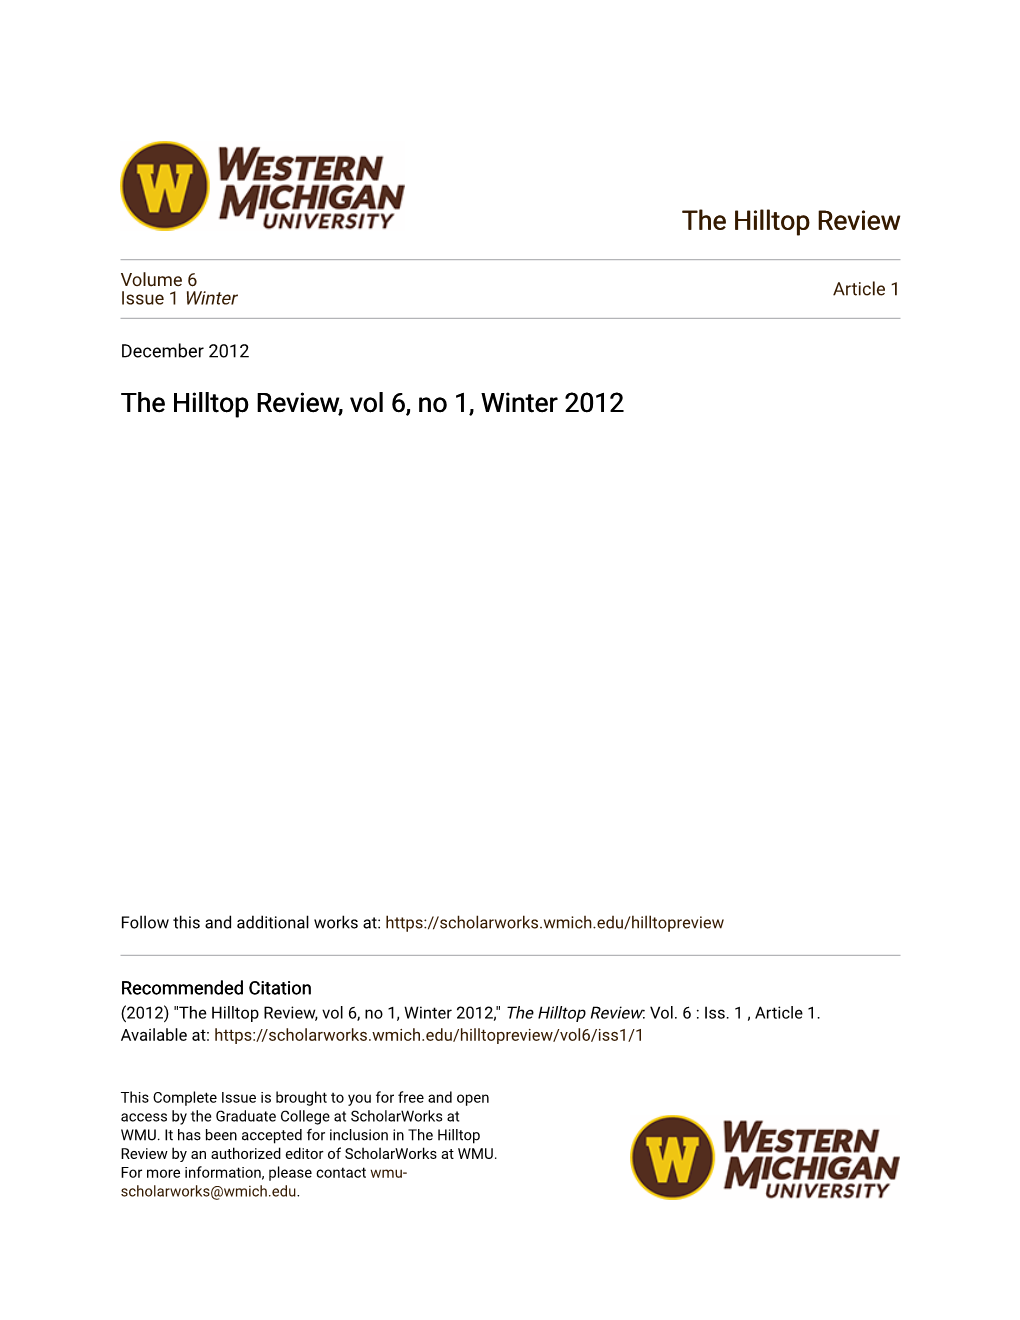 The Hilltop Review, Vol 6, No 1, Winter 2012